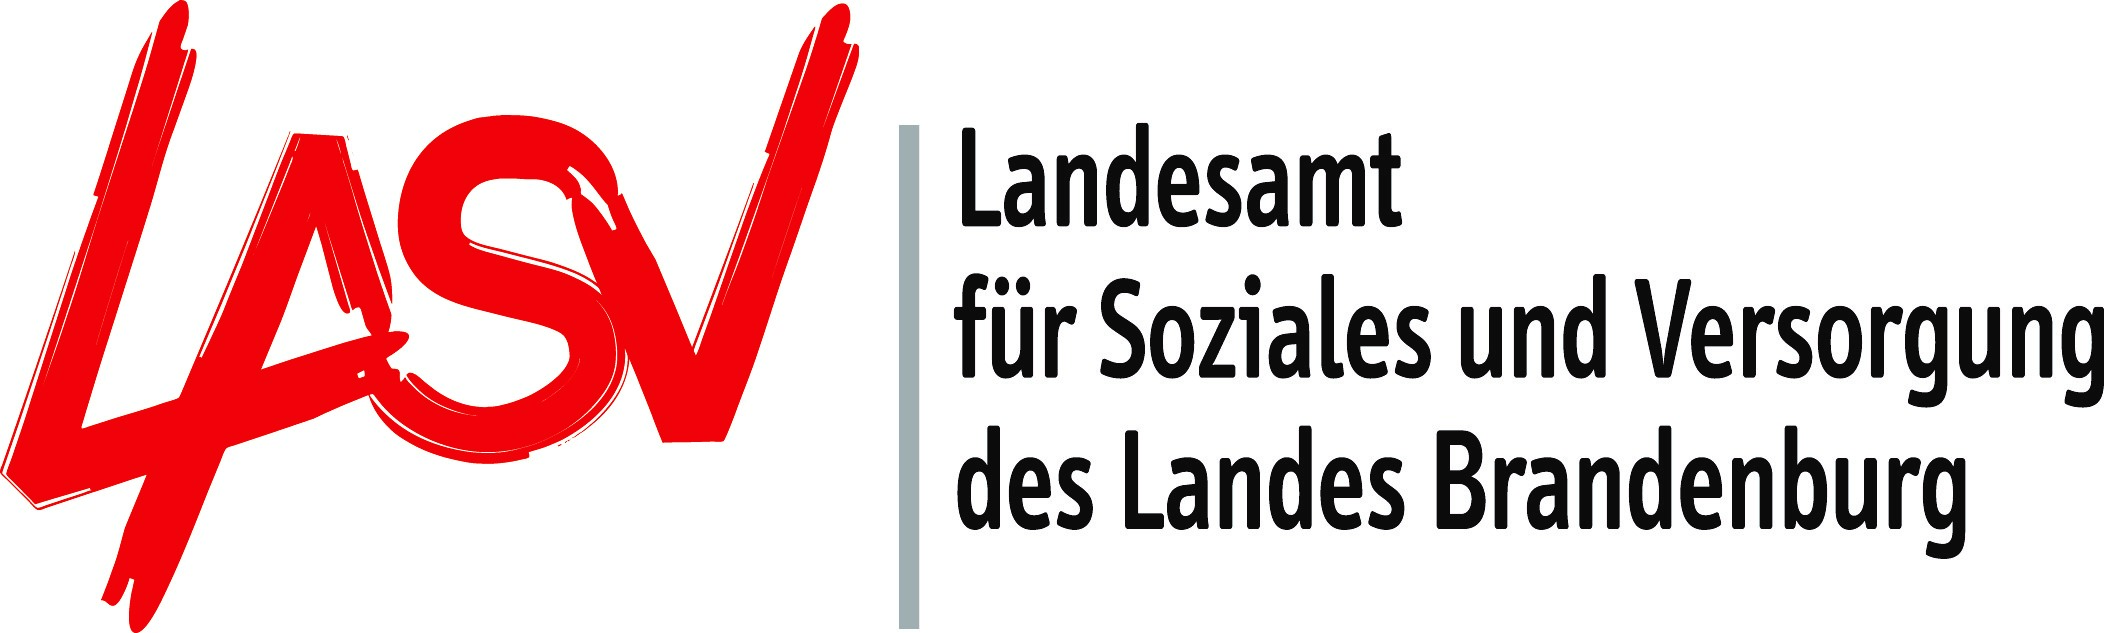 Logo Landesamt für Soziales und Versorgung (LASV)